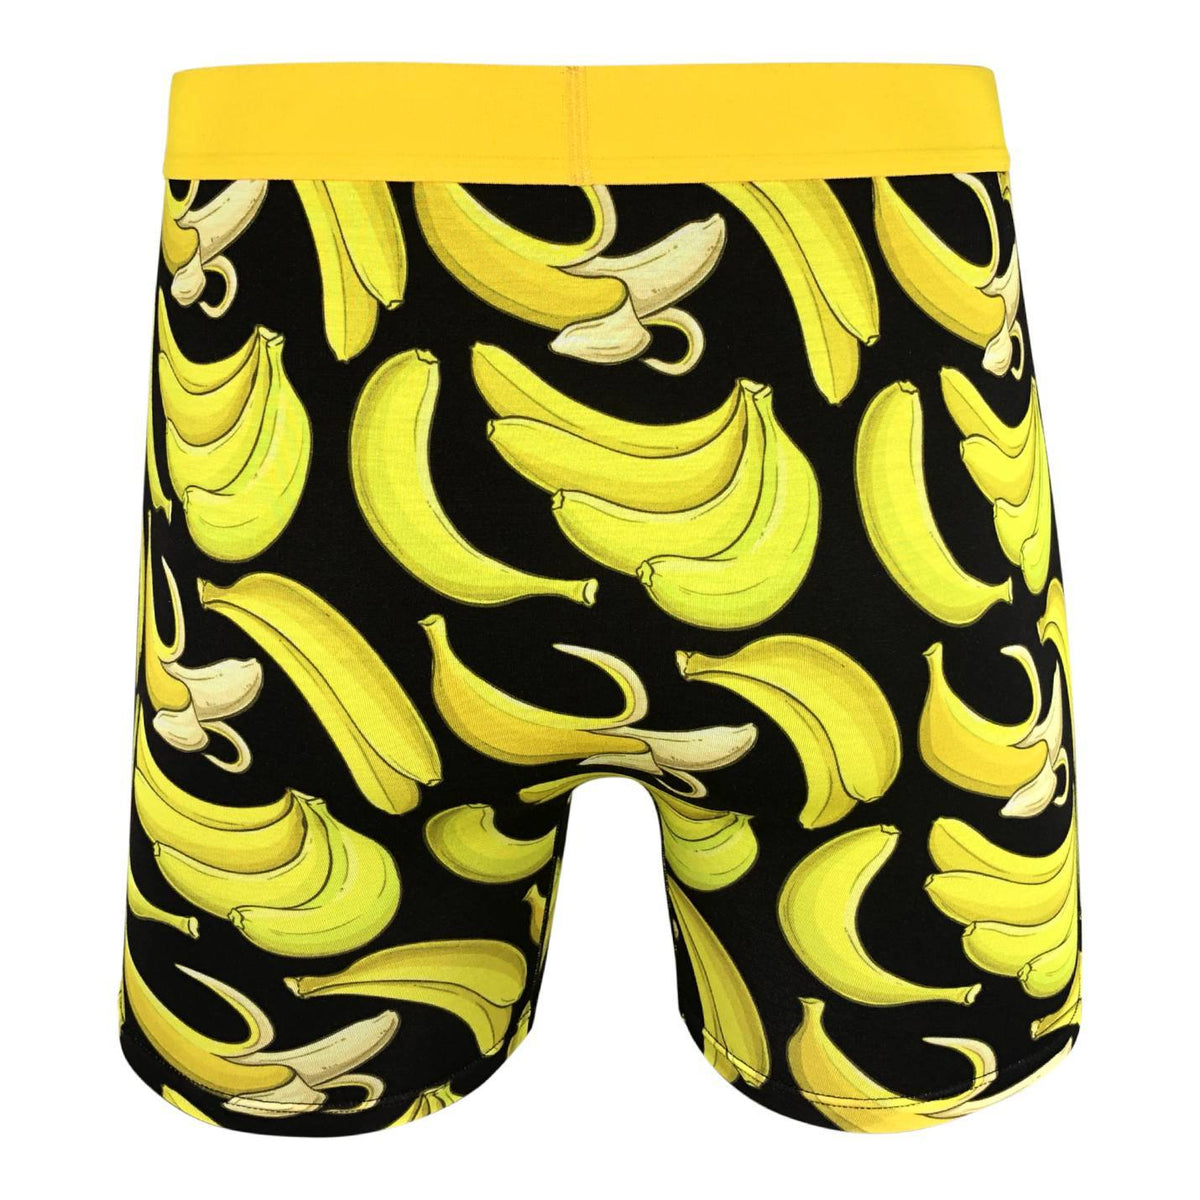 Good Luck Sock Men's Banana Undies